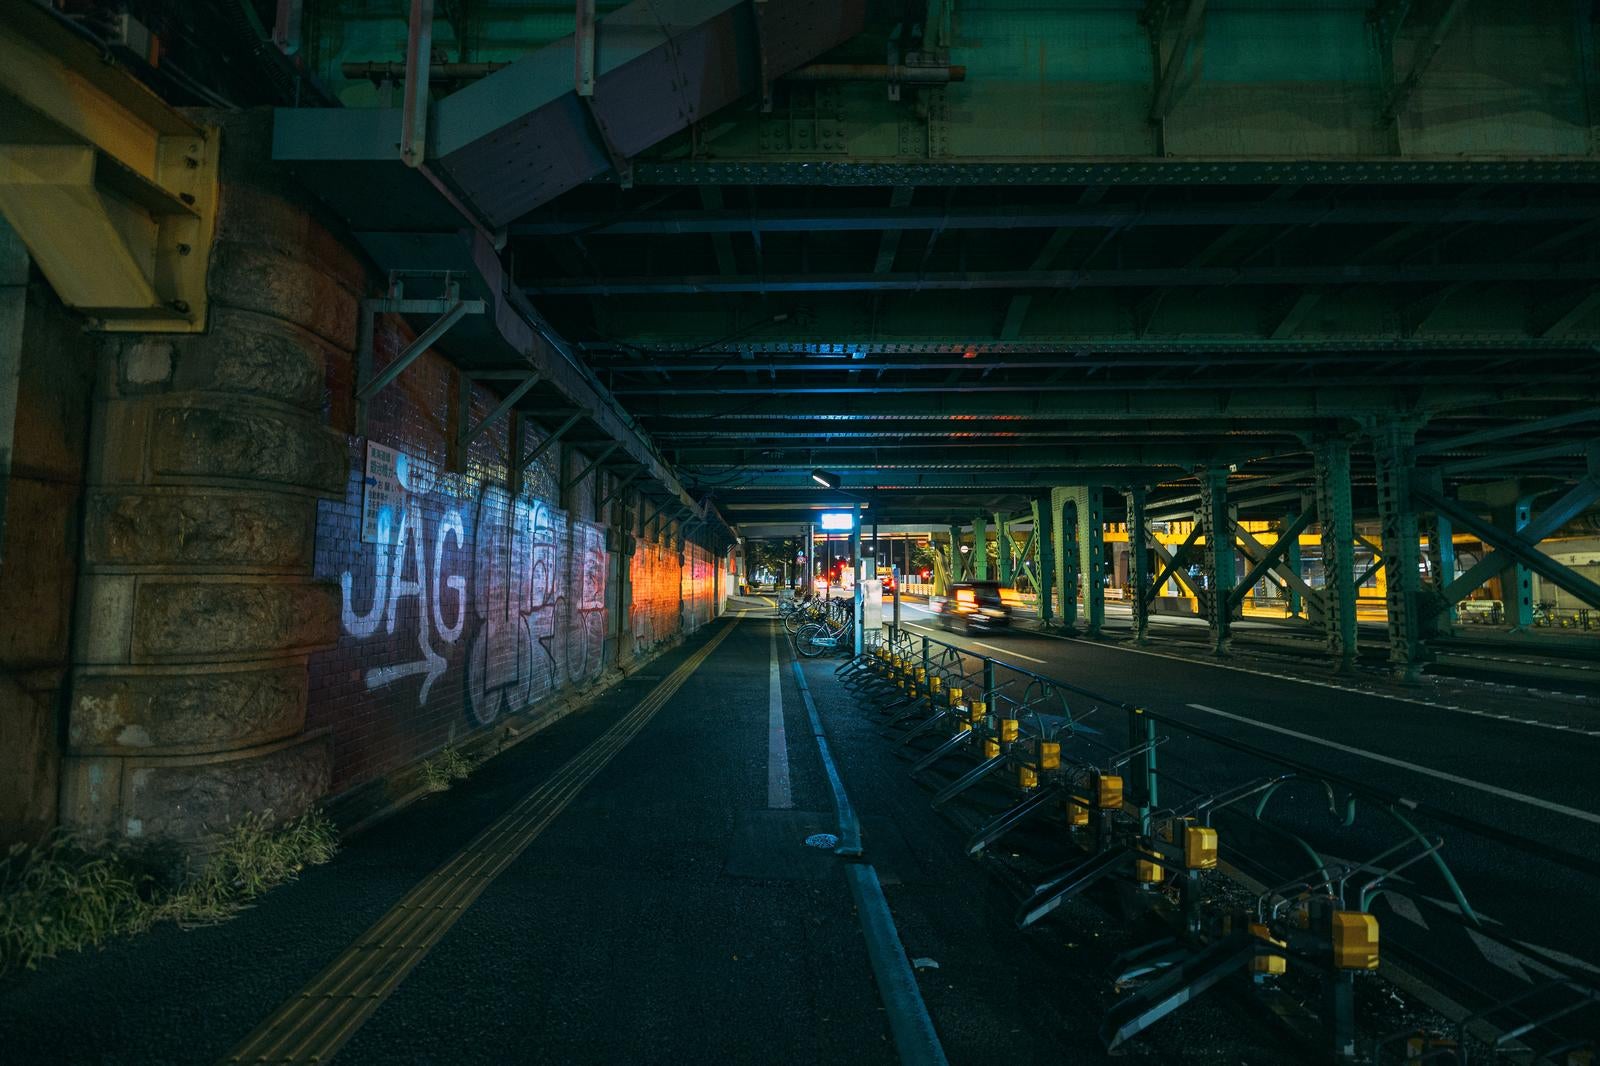 「東京駅前の鉄道高架下の様子」の写真